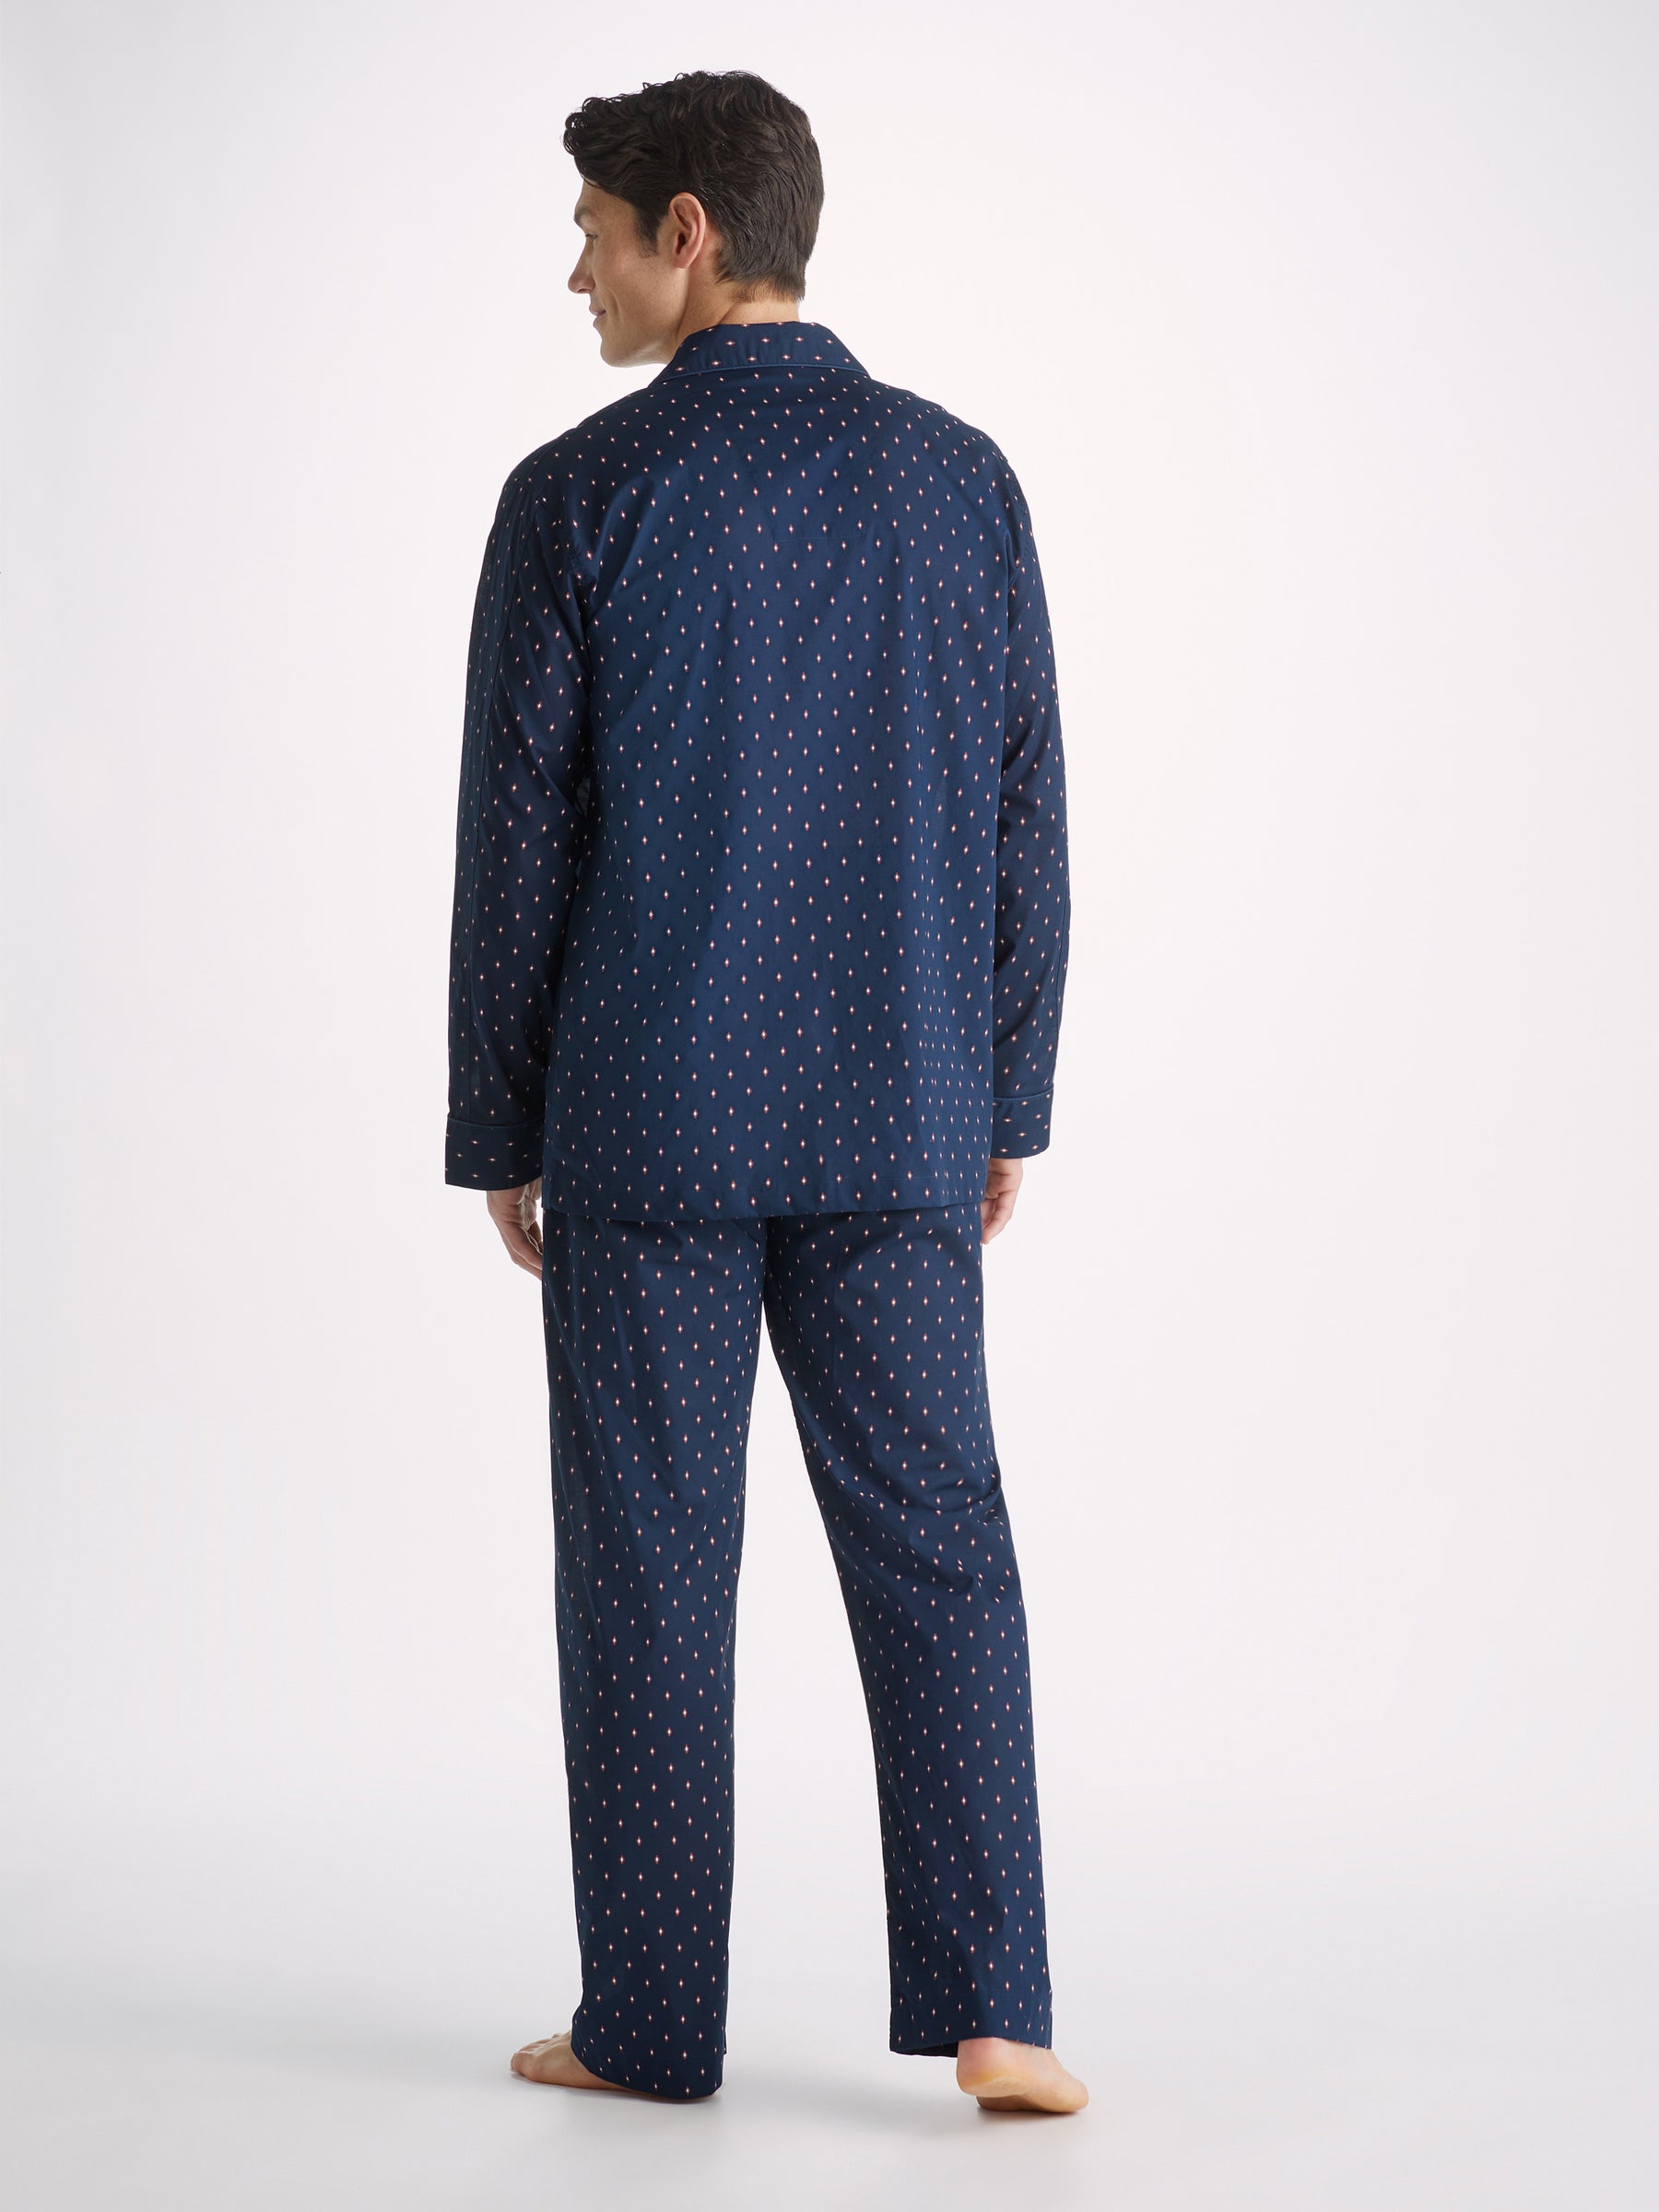 Men's Classic Fit Pyjamas Neslon 96 Cotton Batiste Navy